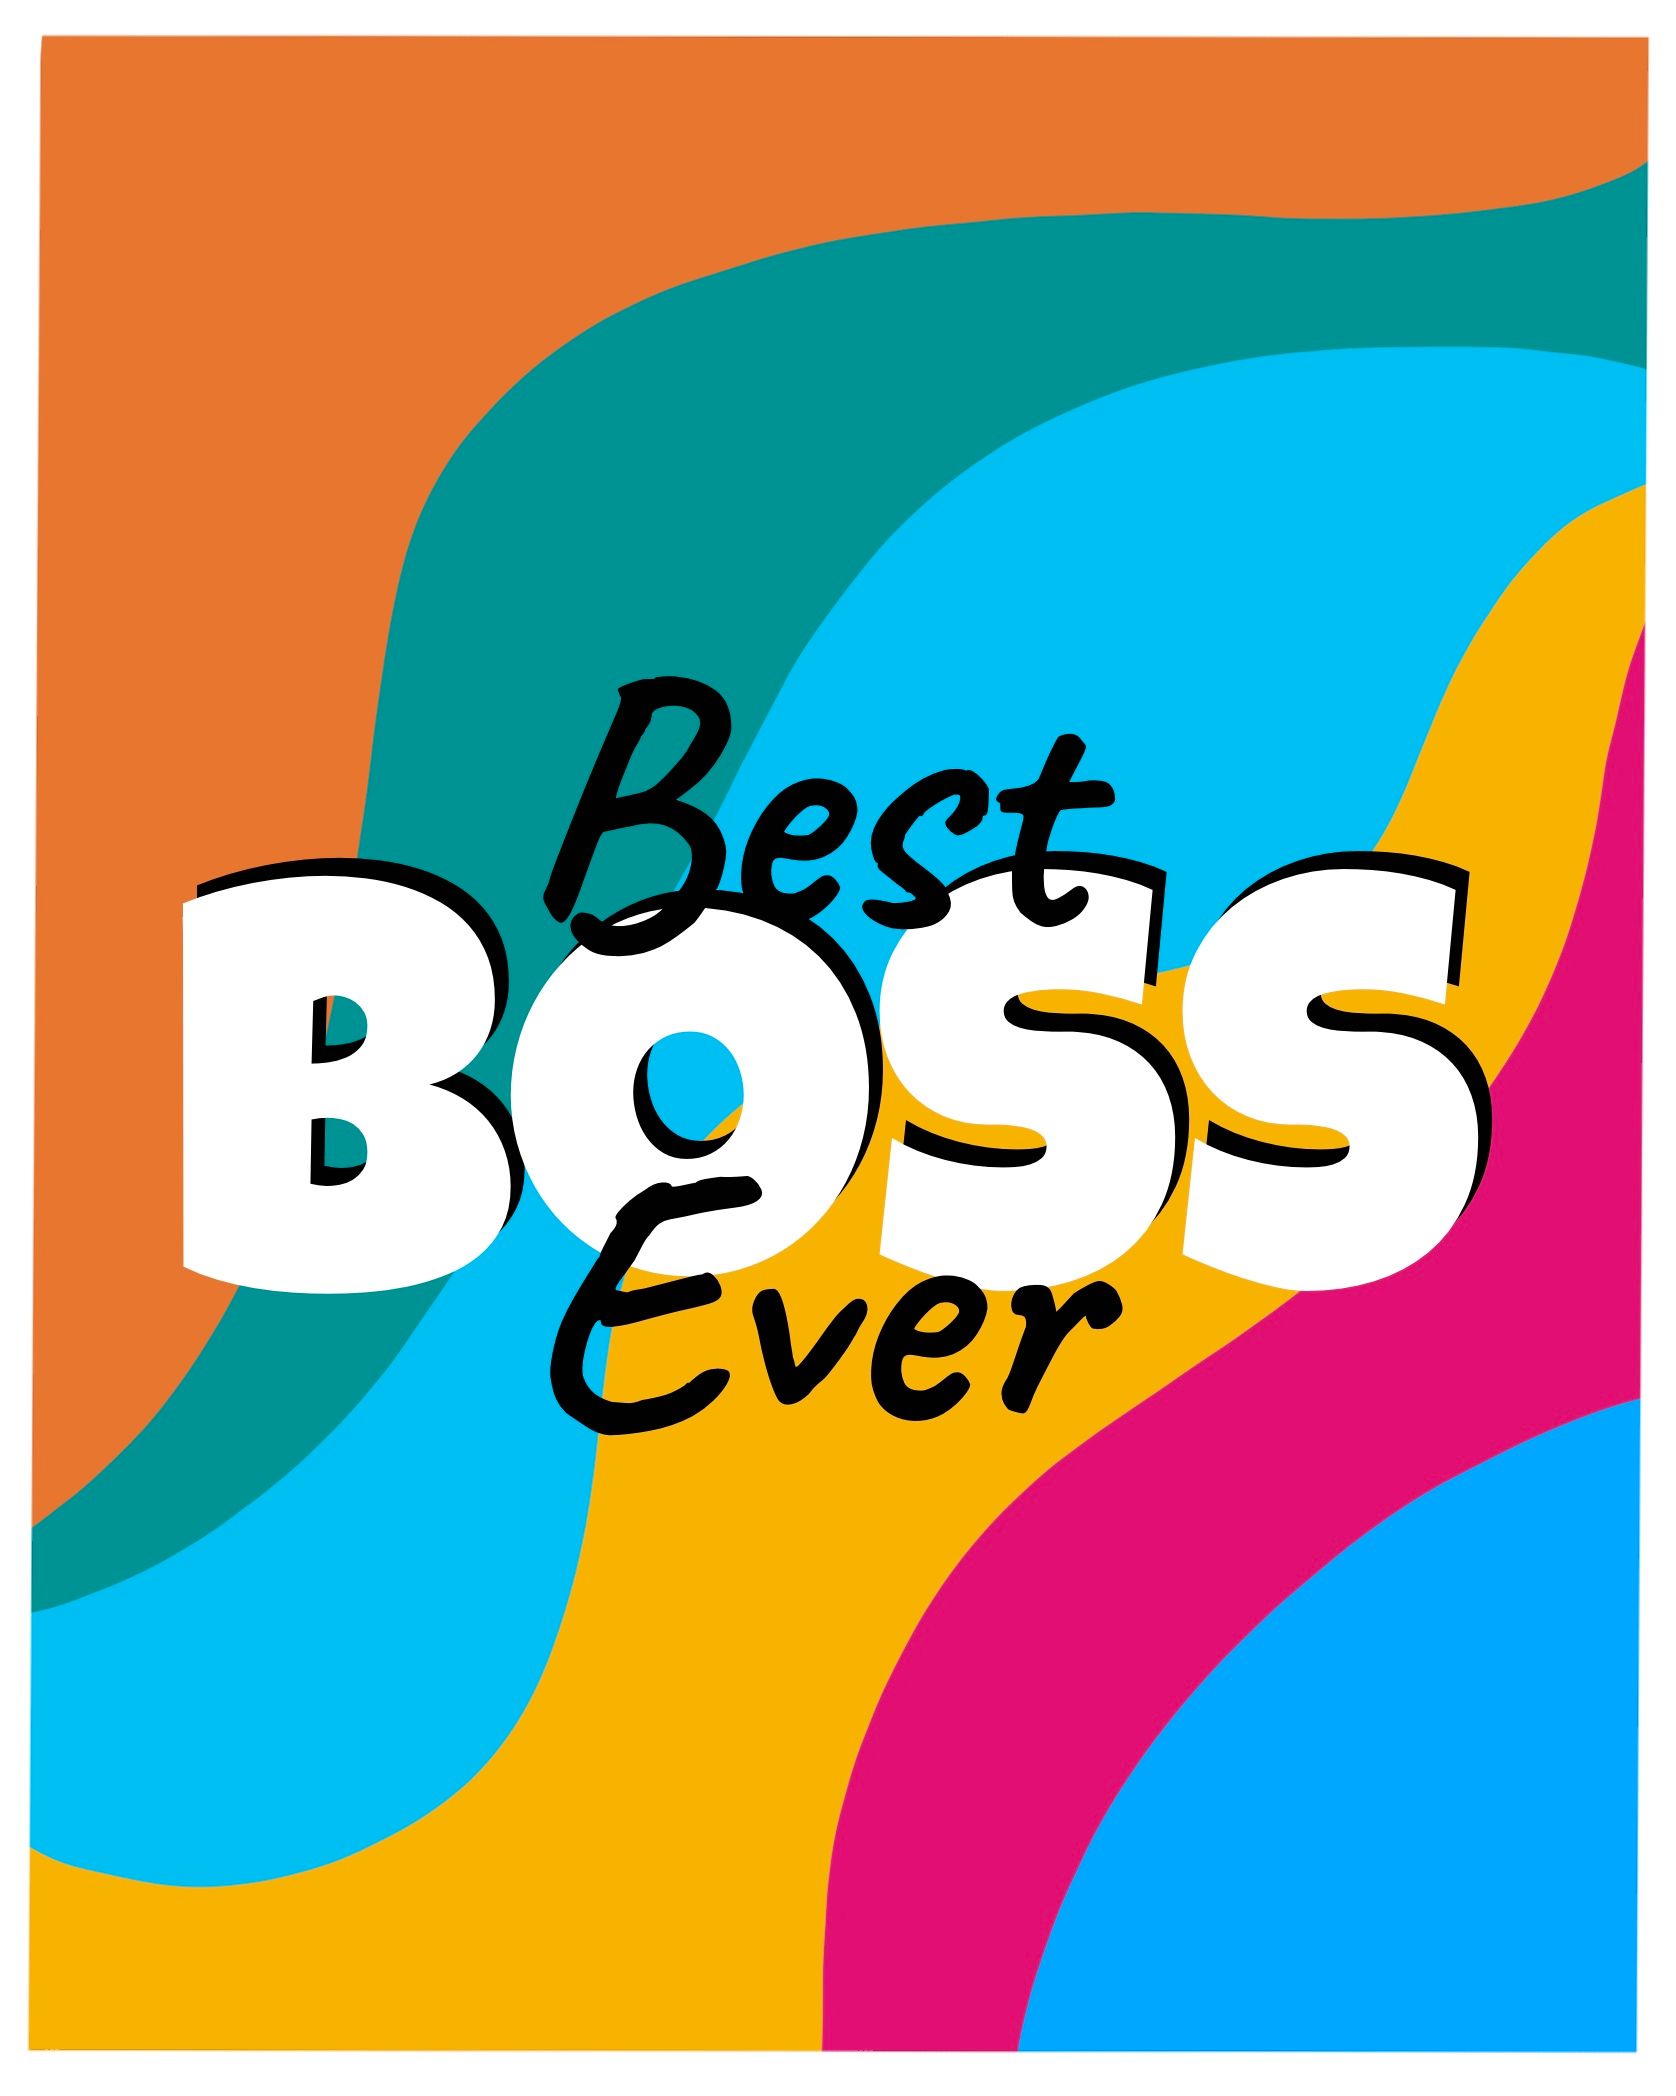 Card design "best boss ever"